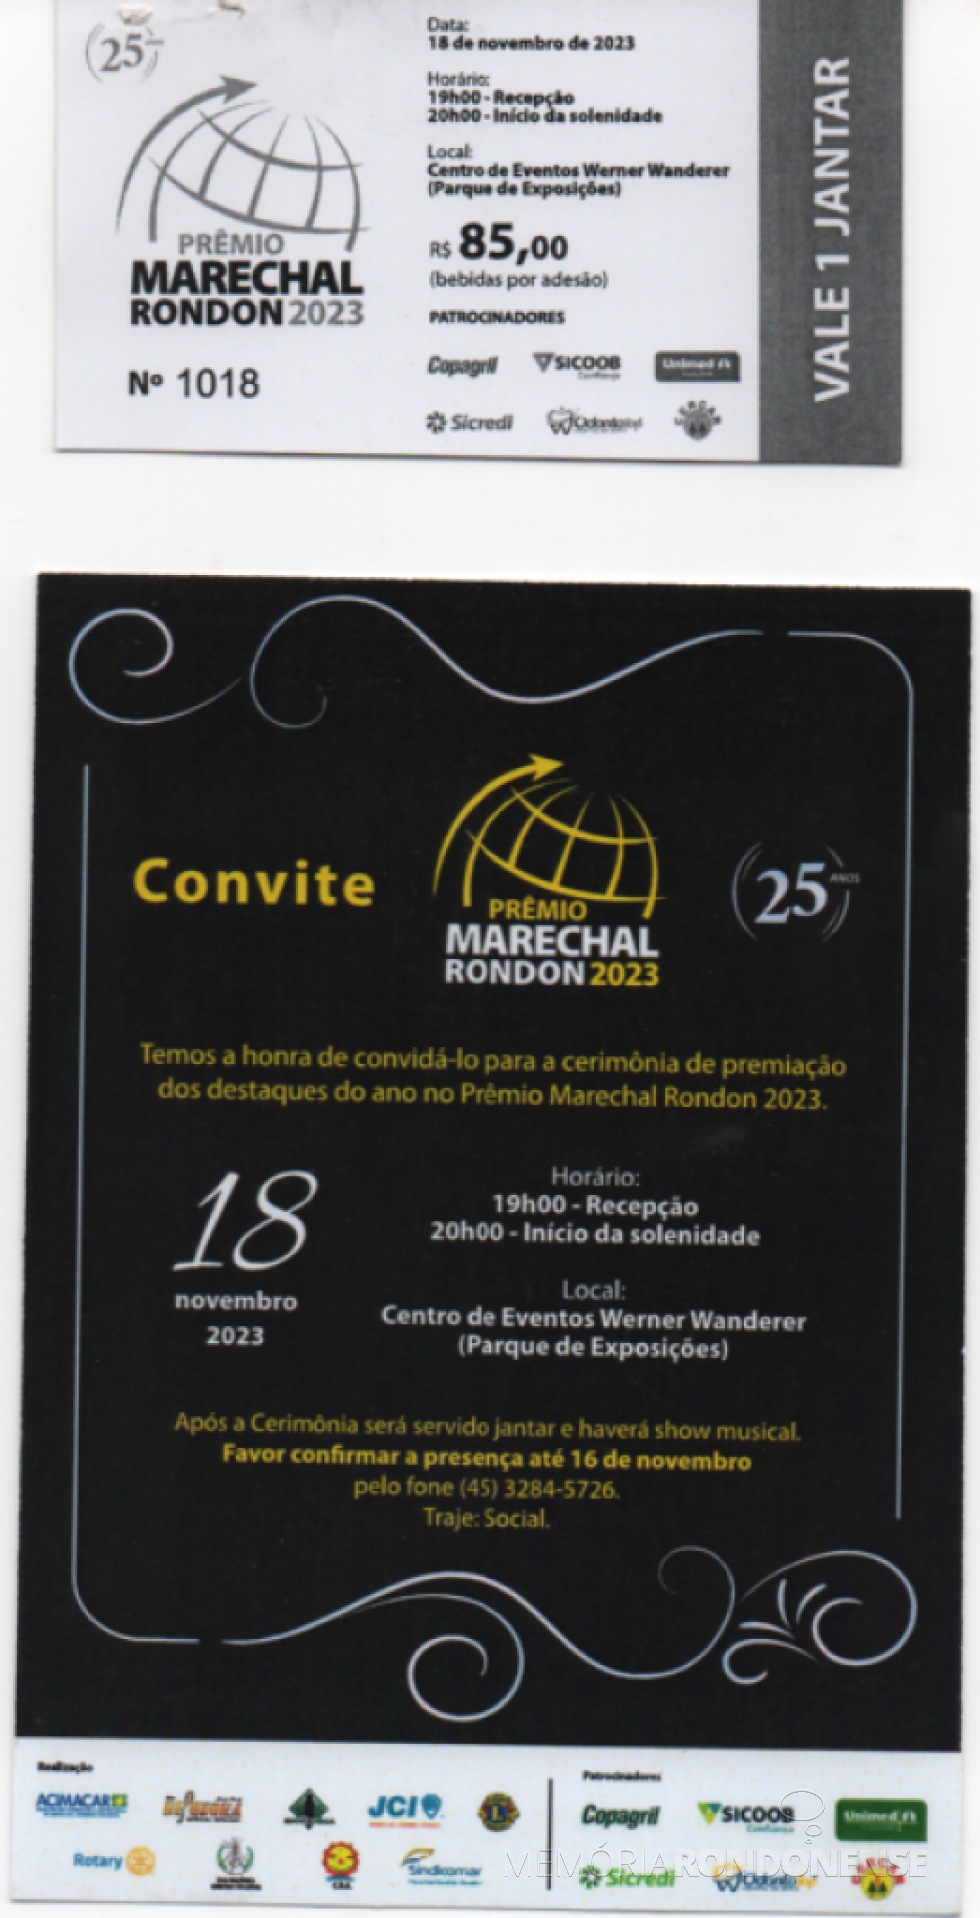 || Ticket para o jantar e o convite para o Prêmio Marechal Rondon 2023, em novembro de 2023.
Imagem: Acervo Projeto Memória Rondonense - FOTO 27- 